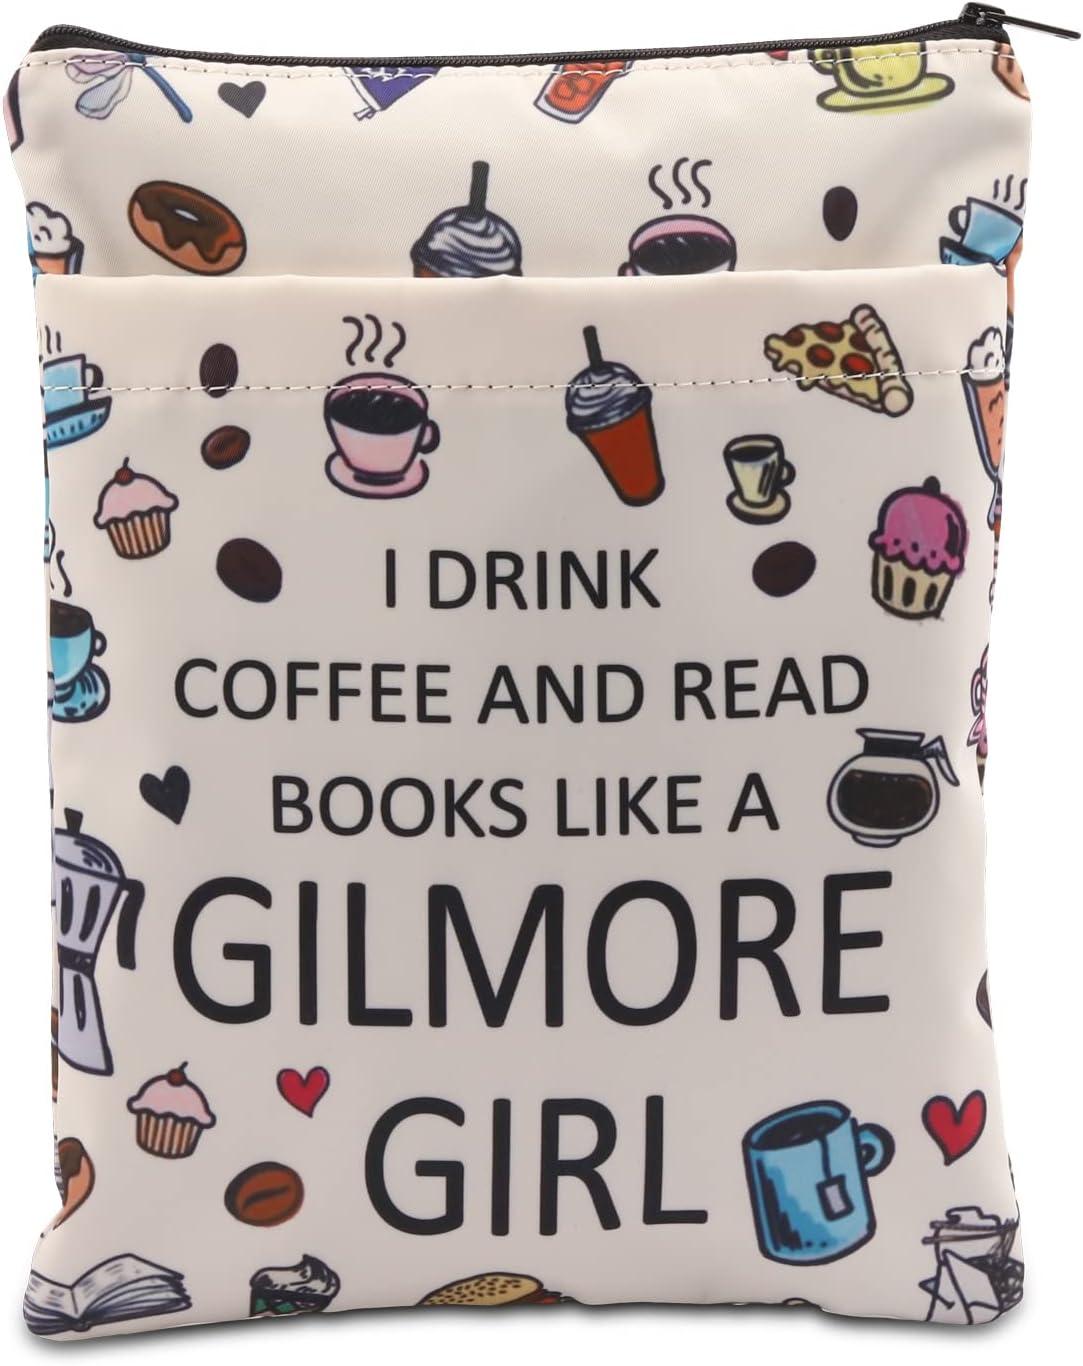 "나는 길모어 걸처럼 커피를 마시고 책을 읽습니다"라고 적힌 커피와 페이스트리를 담은 흰색 책슬리브